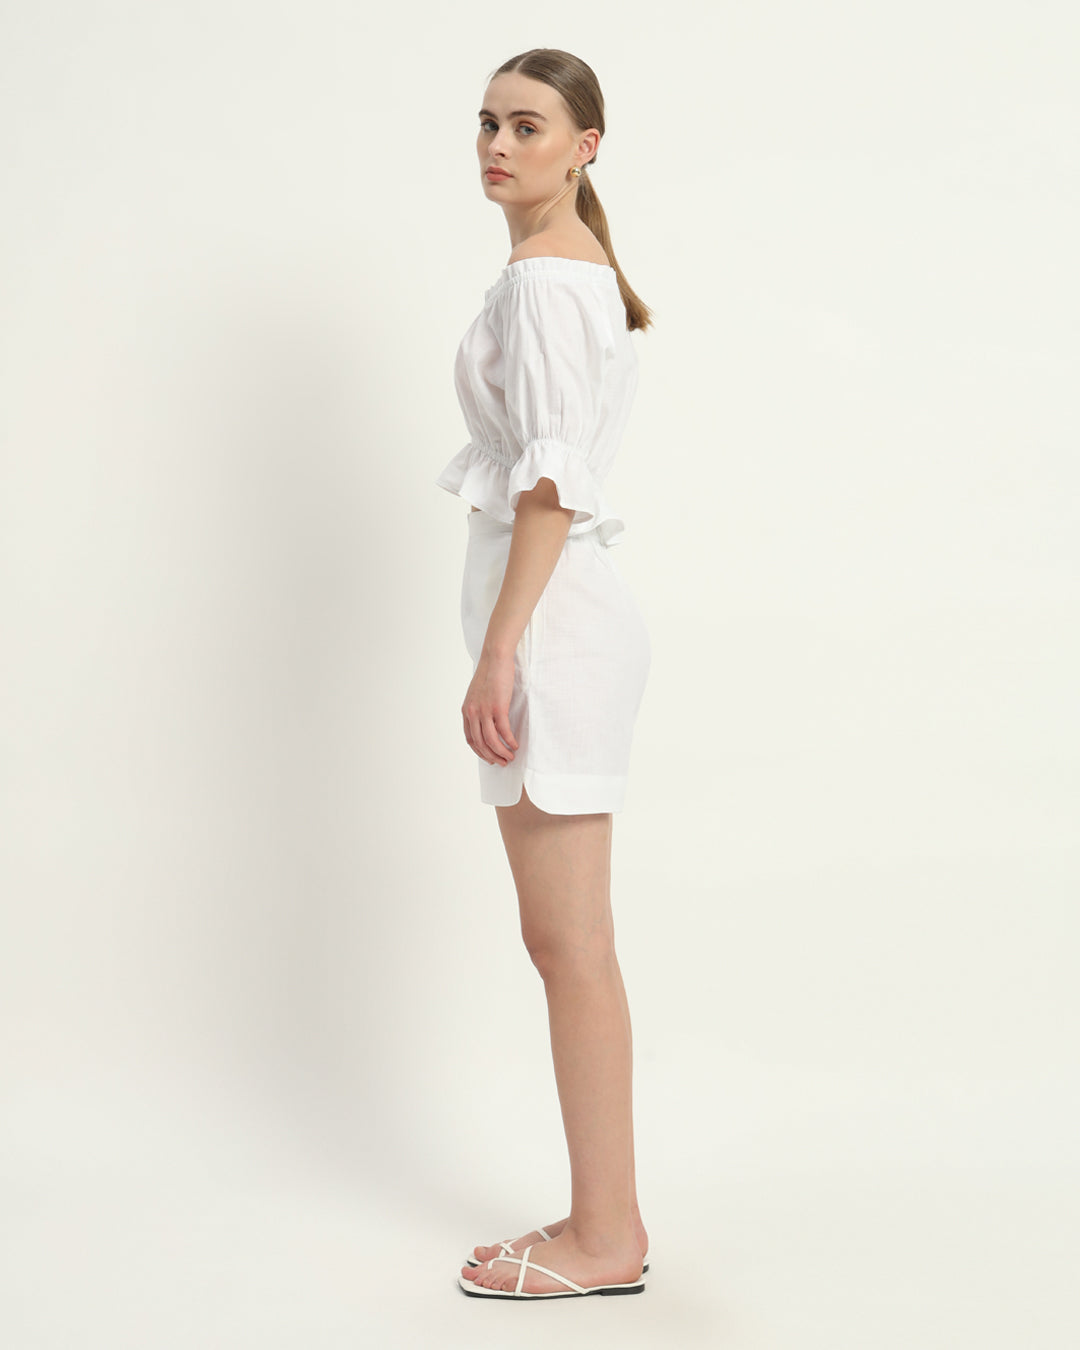 Shorts Matching Set- White Linen Radiant Ruche